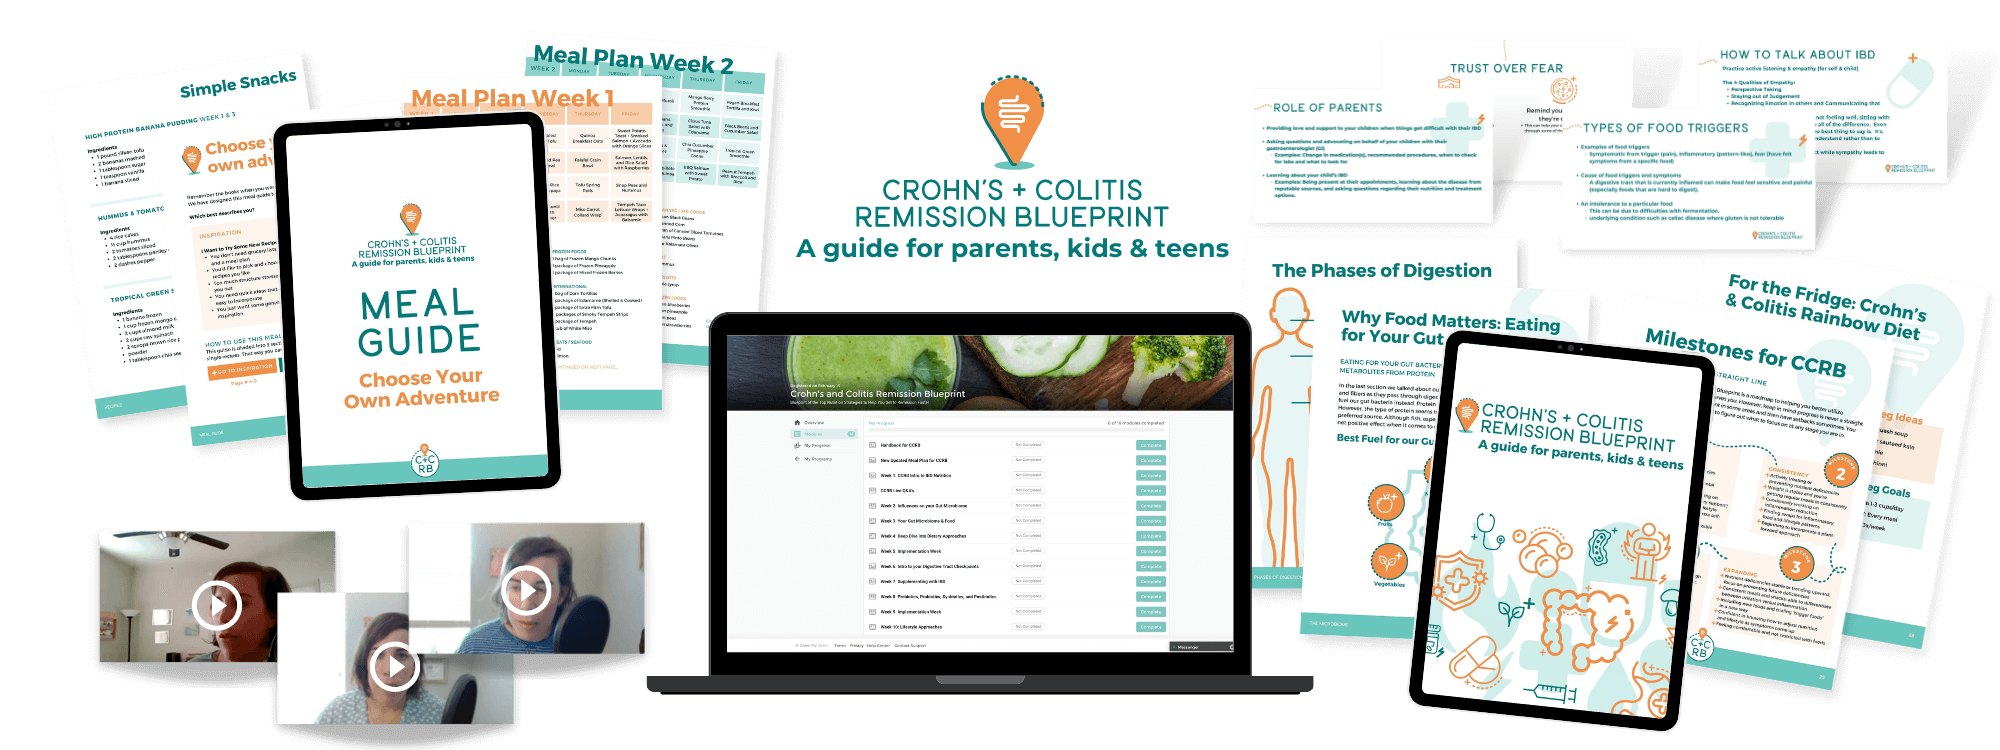 Crohn's & Colitis Remission Blueprint, a guide for parents, kids and teens mockup showing online program, slides, workbooks, etc.